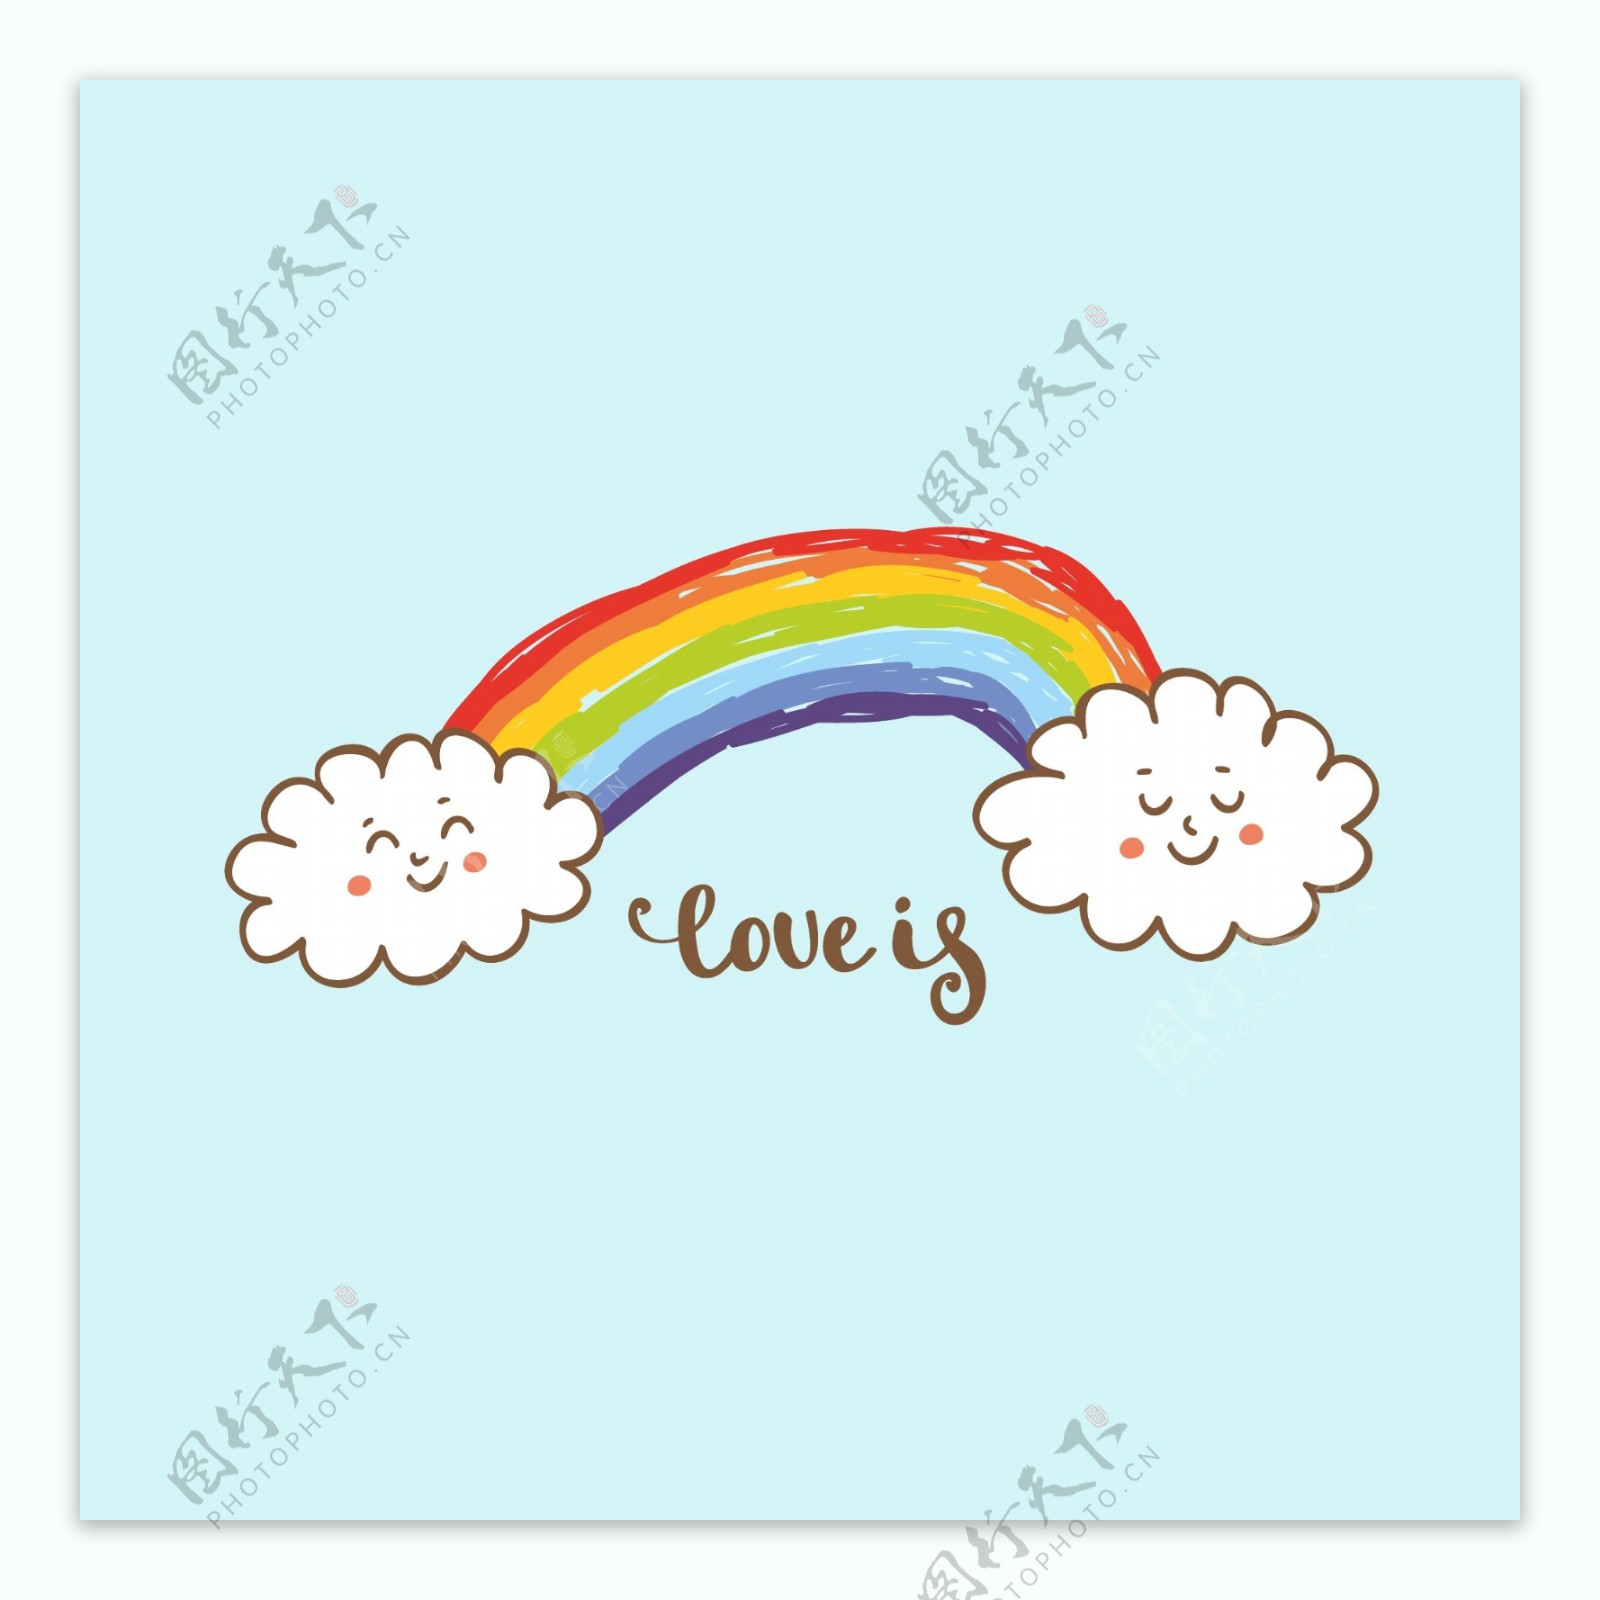 可爱卡通彩虹云朵素材模板免费下载_psd格式_1024像素_编号35422356-千图网